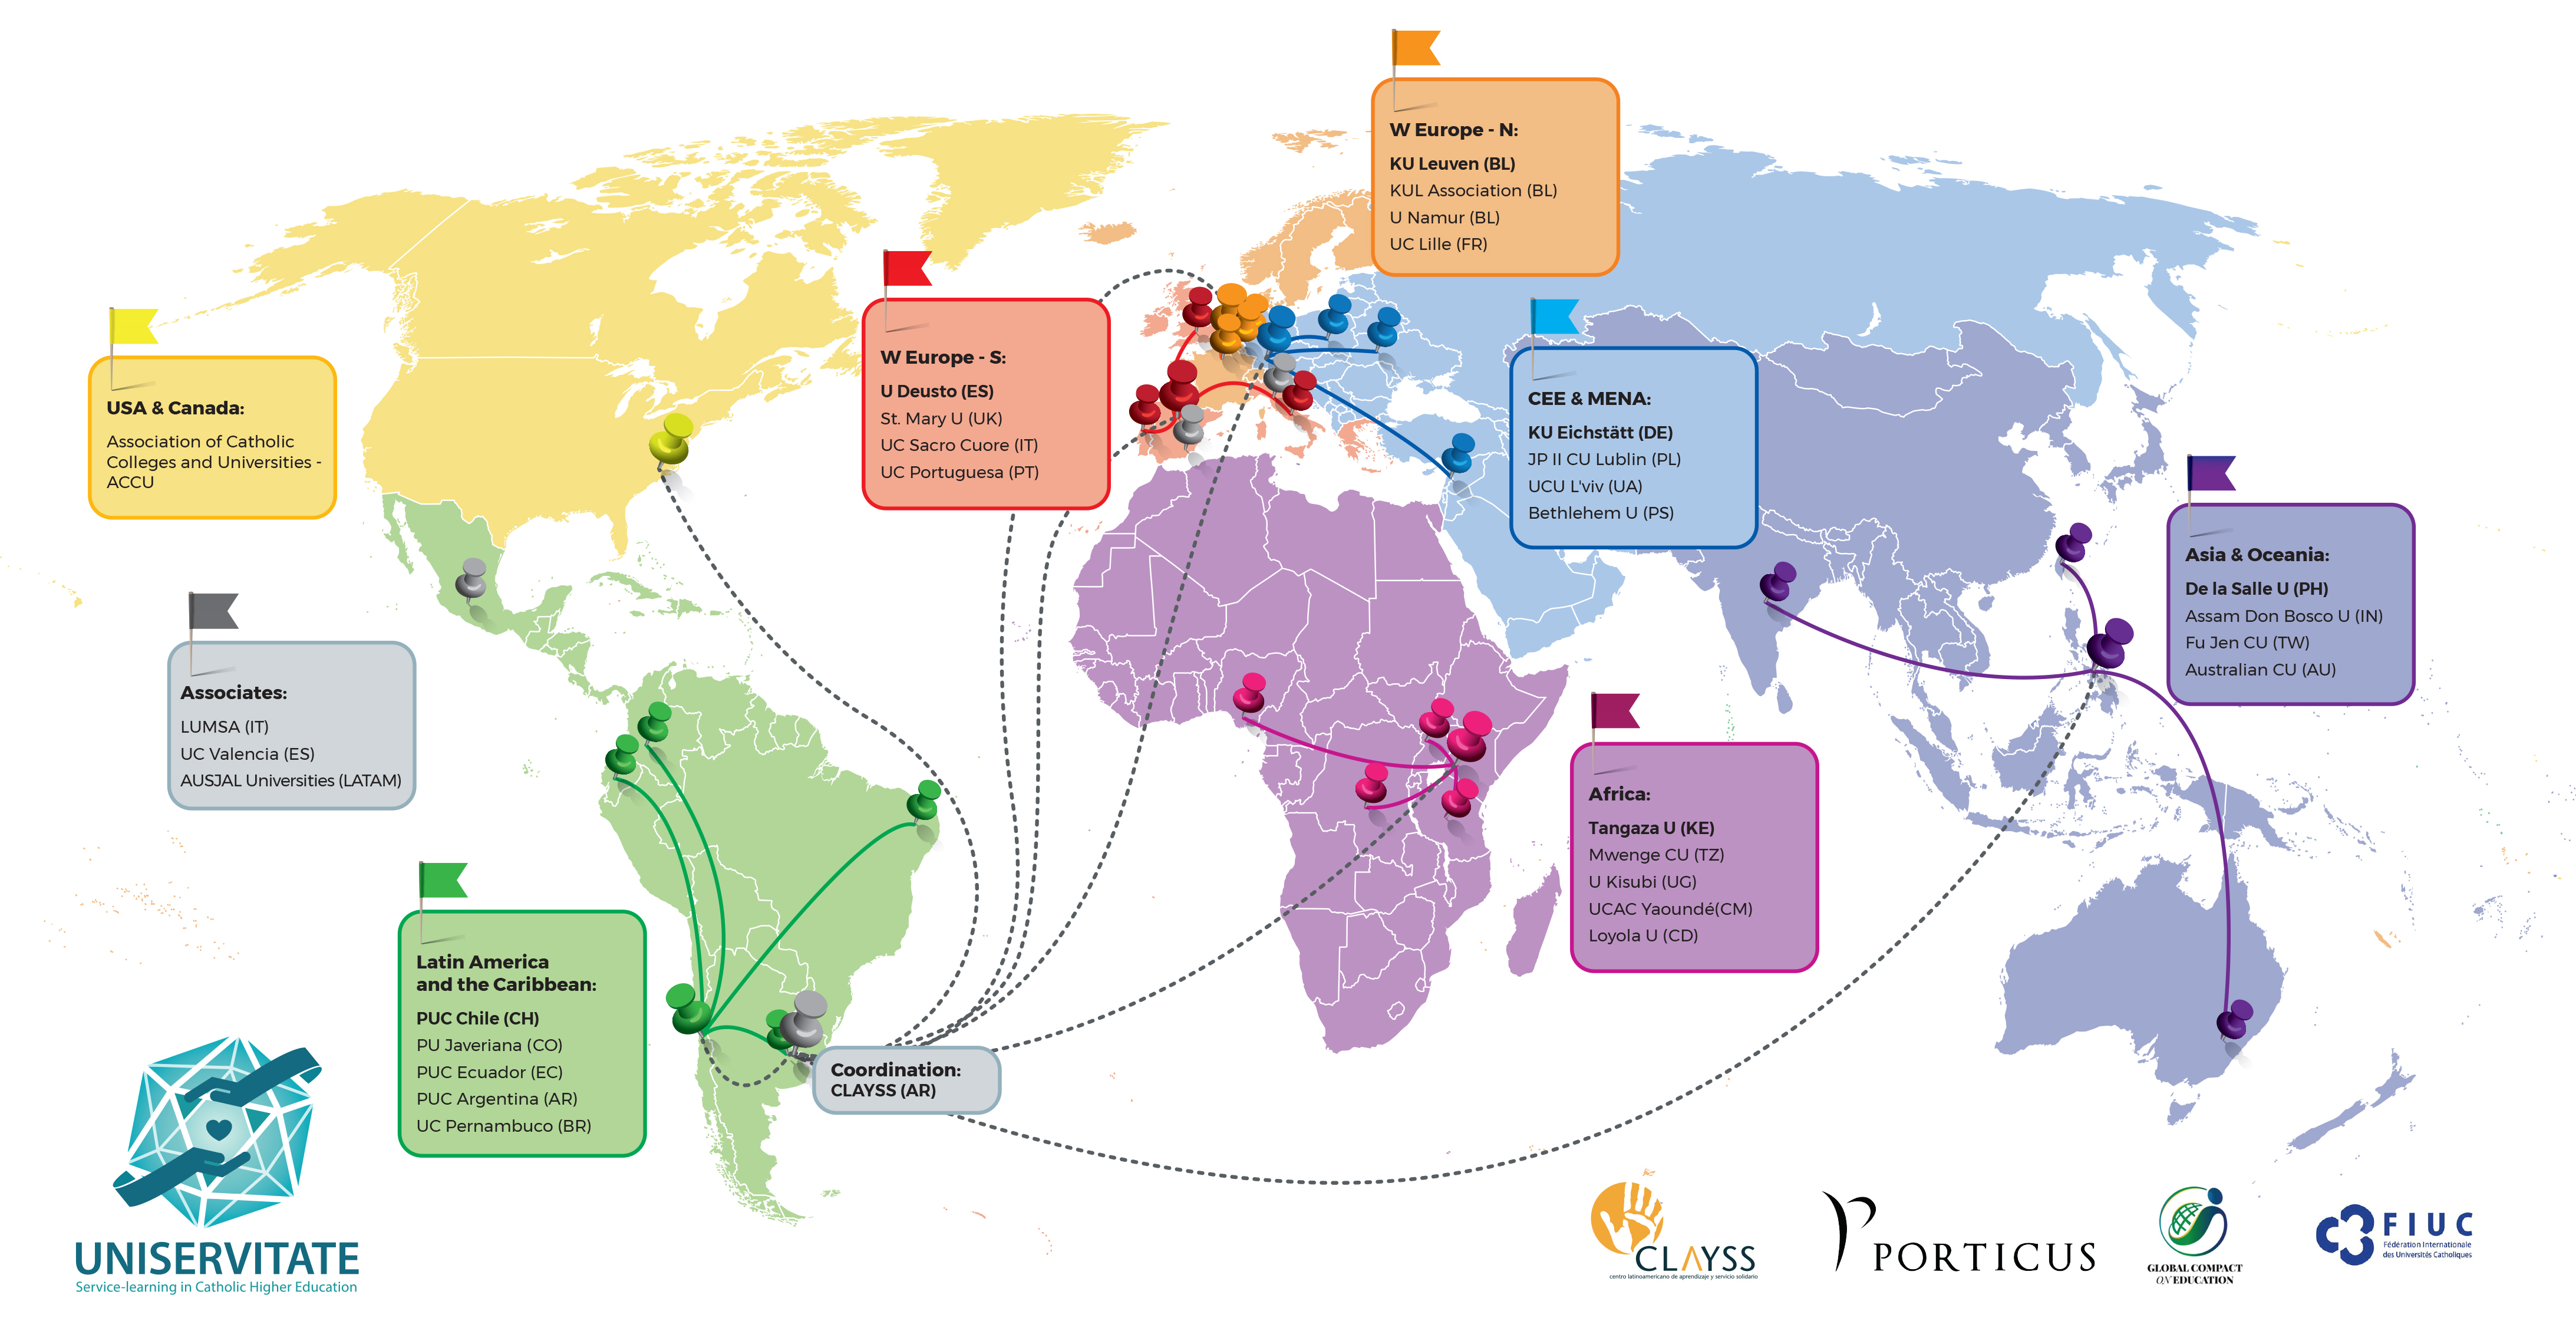 Weltkarte mit den regionalen Hubs des UNISERVITATE Netzwerks